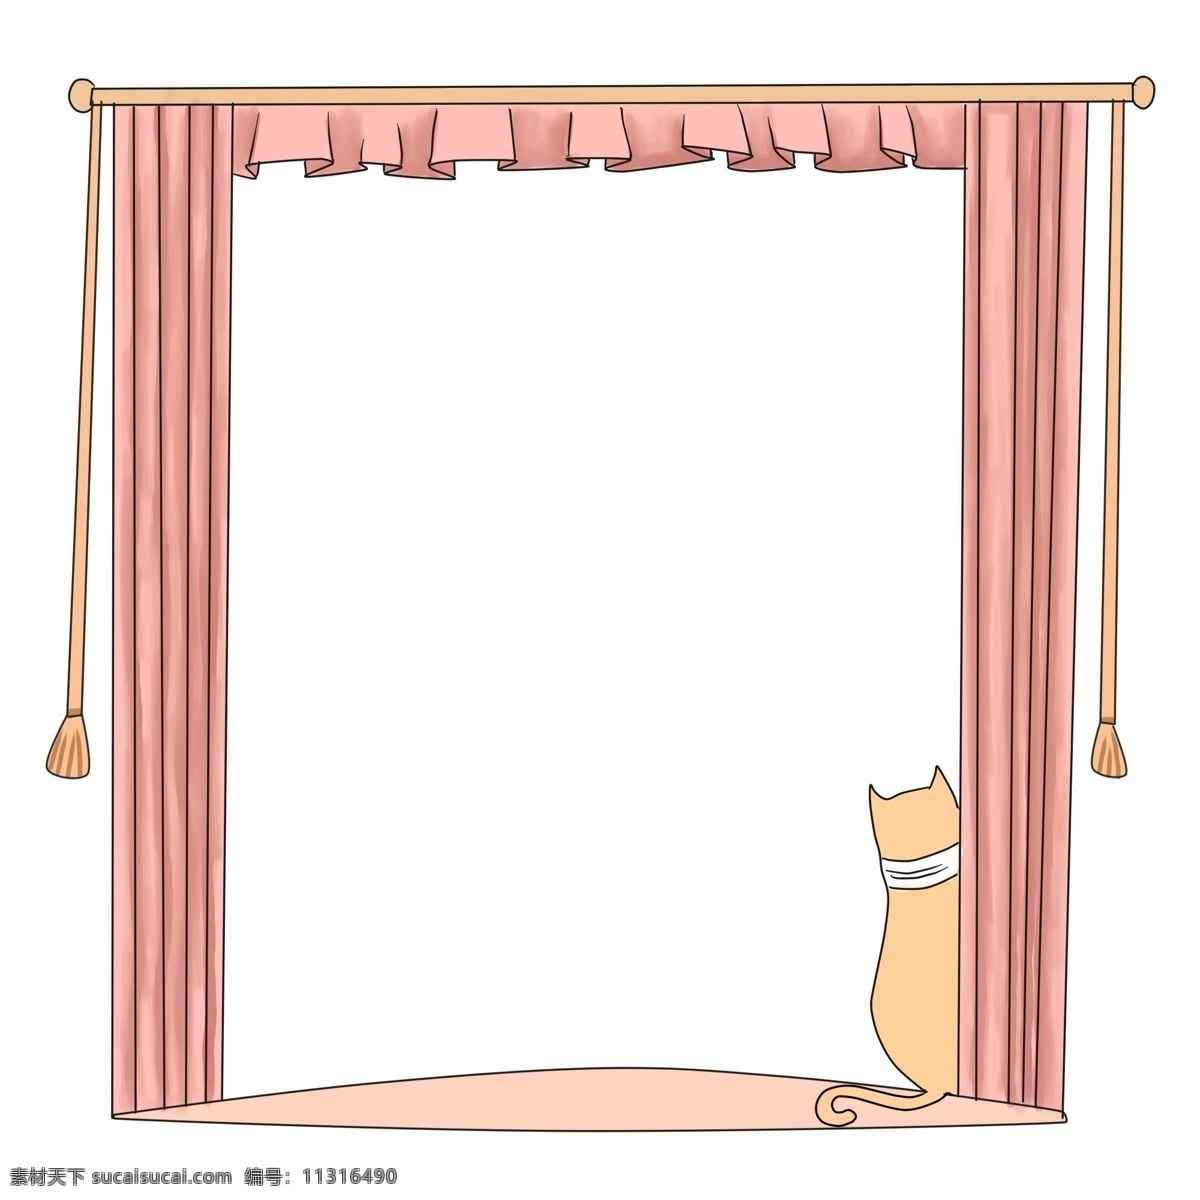 卡通 窗帘 小猫 边框 卡通边框 肉色窗帘 边框装饰 小猫边框 唯美边框 小动物边框 可爱的边框